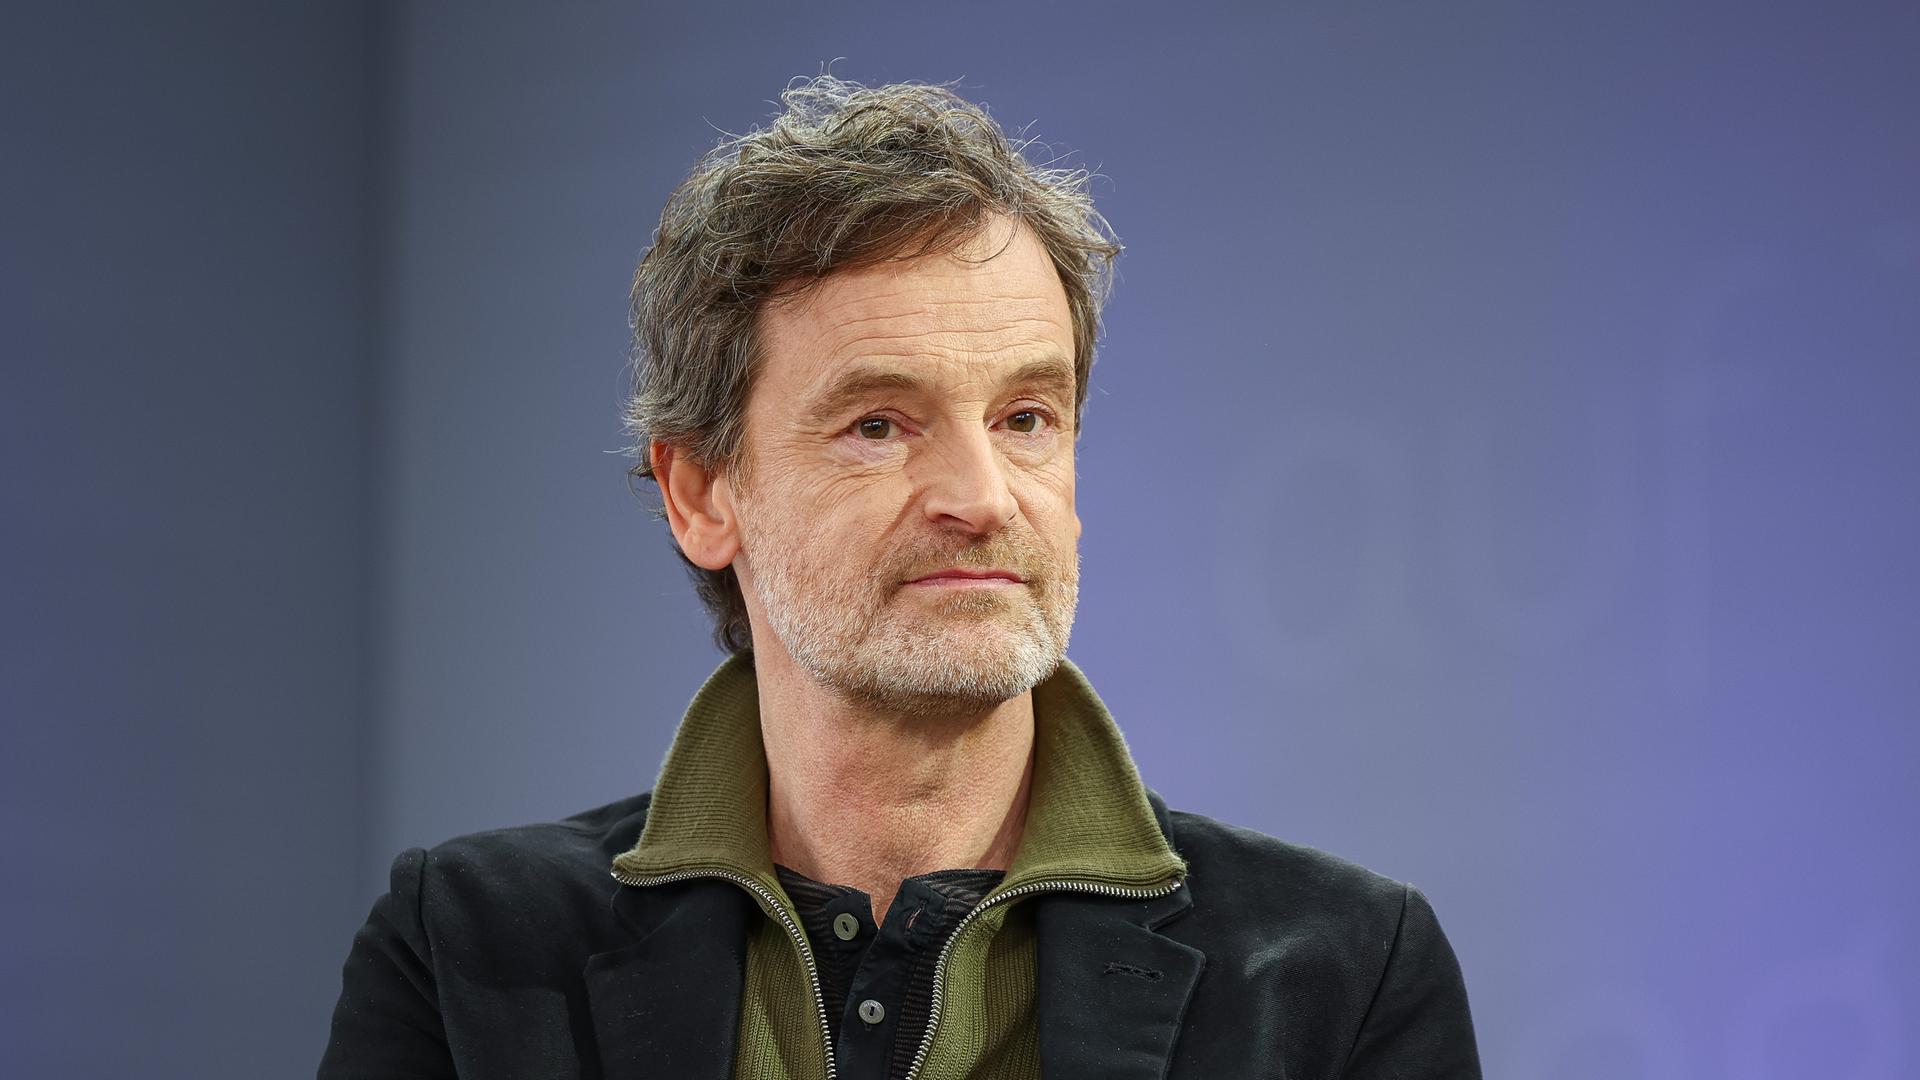 Der deutsche Schauspieler Jörg Hartmann trägt ein schwarzes Sakko und einen grünen Pullover, er sitzt auf einer Bühne mit violettem Hintergrund und schaut freundlich an der Kamera vorbei.